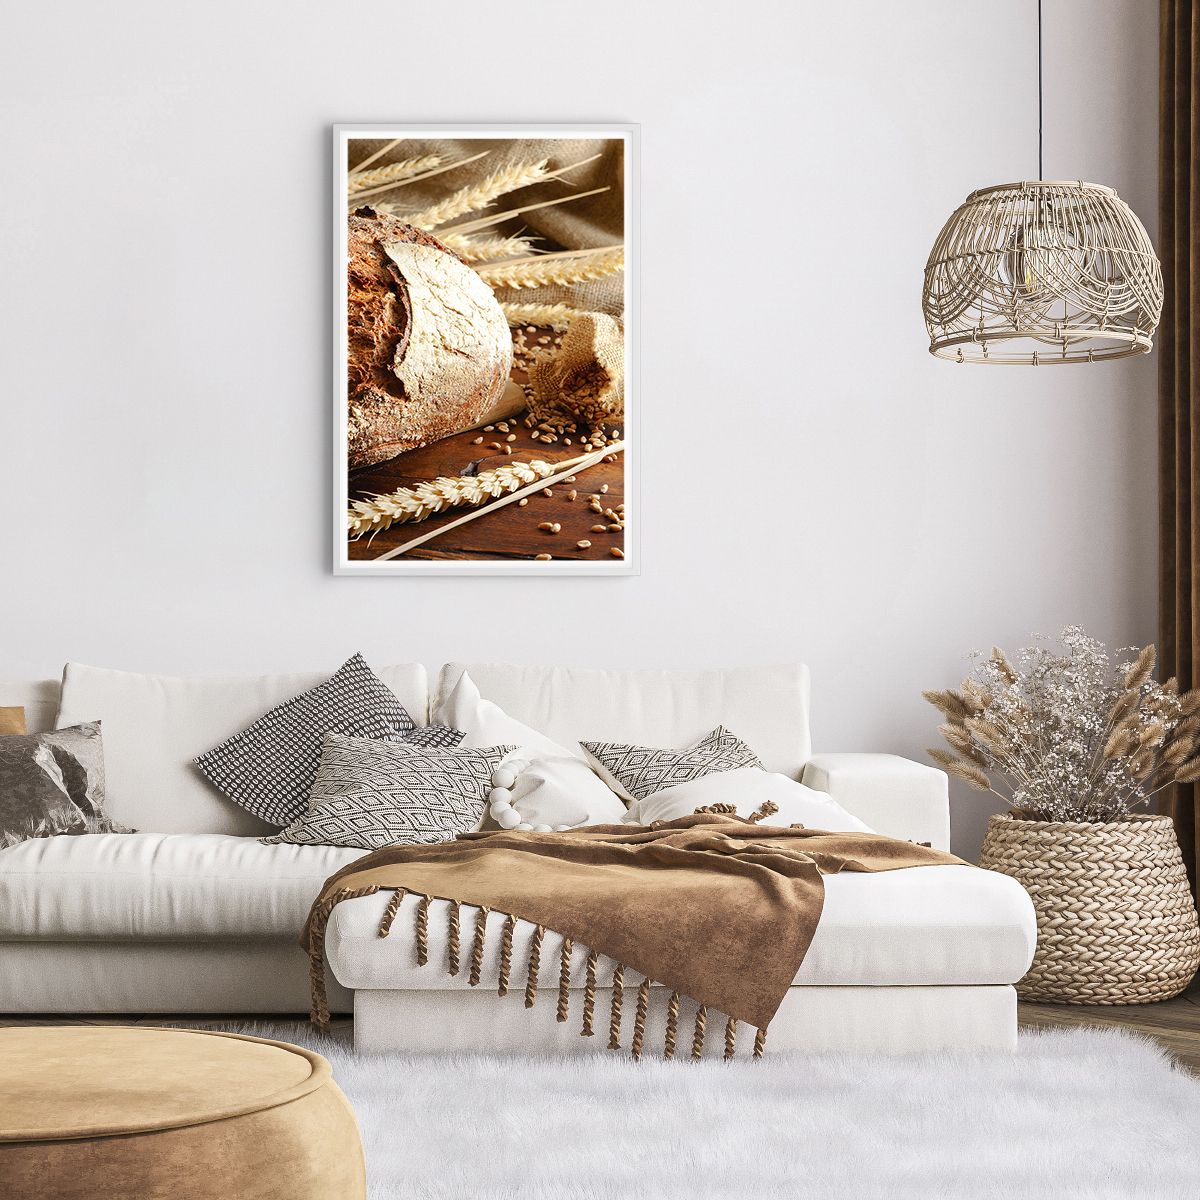 Poster in einem weißen Rahmen Brot, Poster in einem weißen Rahmen Weizenkörner, Poster in einem weißen Rahmen Gastronomie, Poster in einem weißen Rahmen Müsli, Poster in einem weißen Rahmen Brot